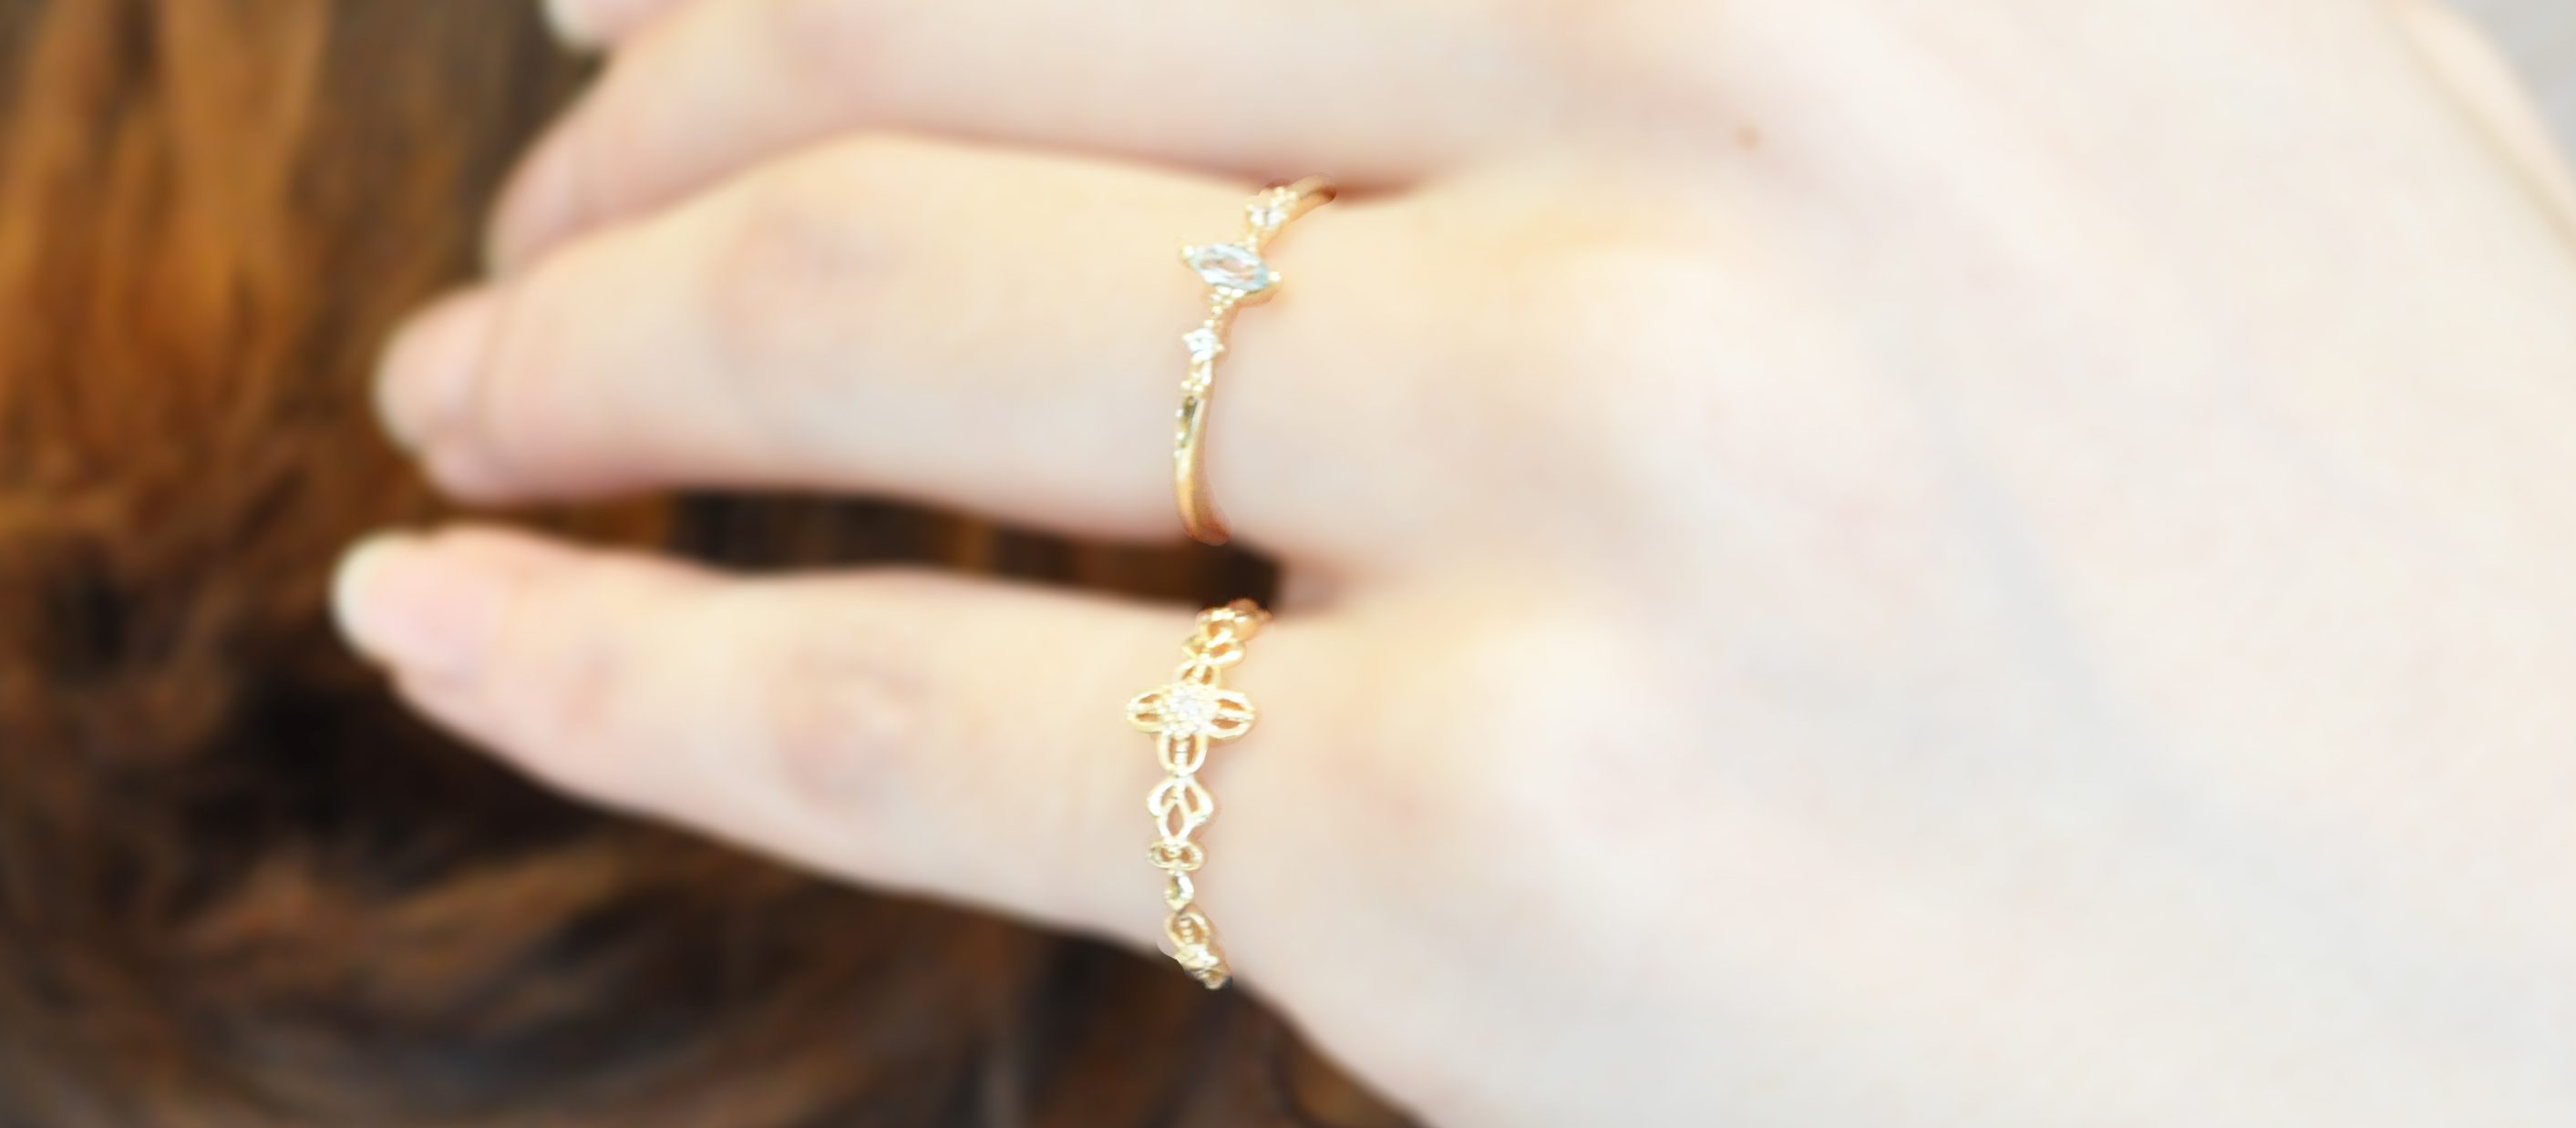 小指に幸運のお守り-1万円代のピンキーリング- | 石川・金沢の結婚指輪